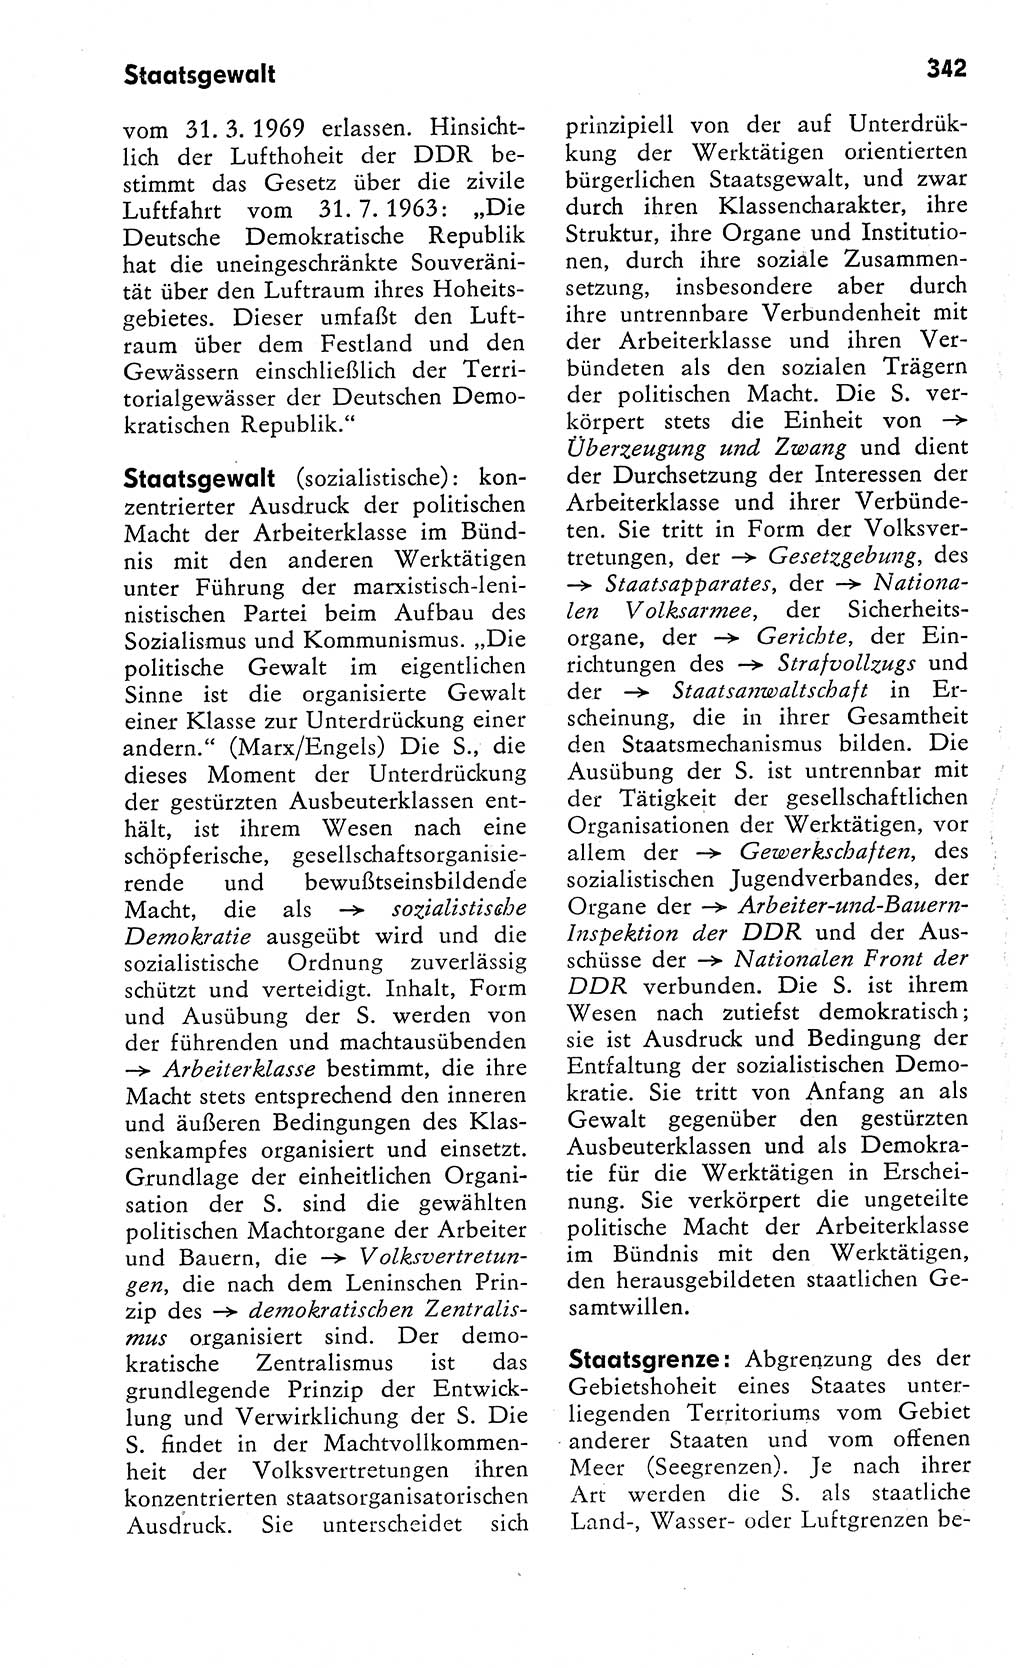 Wörterbuch zum sozialistischen Staat [Deutsche Demokratische Republik (DDR)] 1974, Seite 342 (Wb. soz. St. DDR 1974, S. 342)